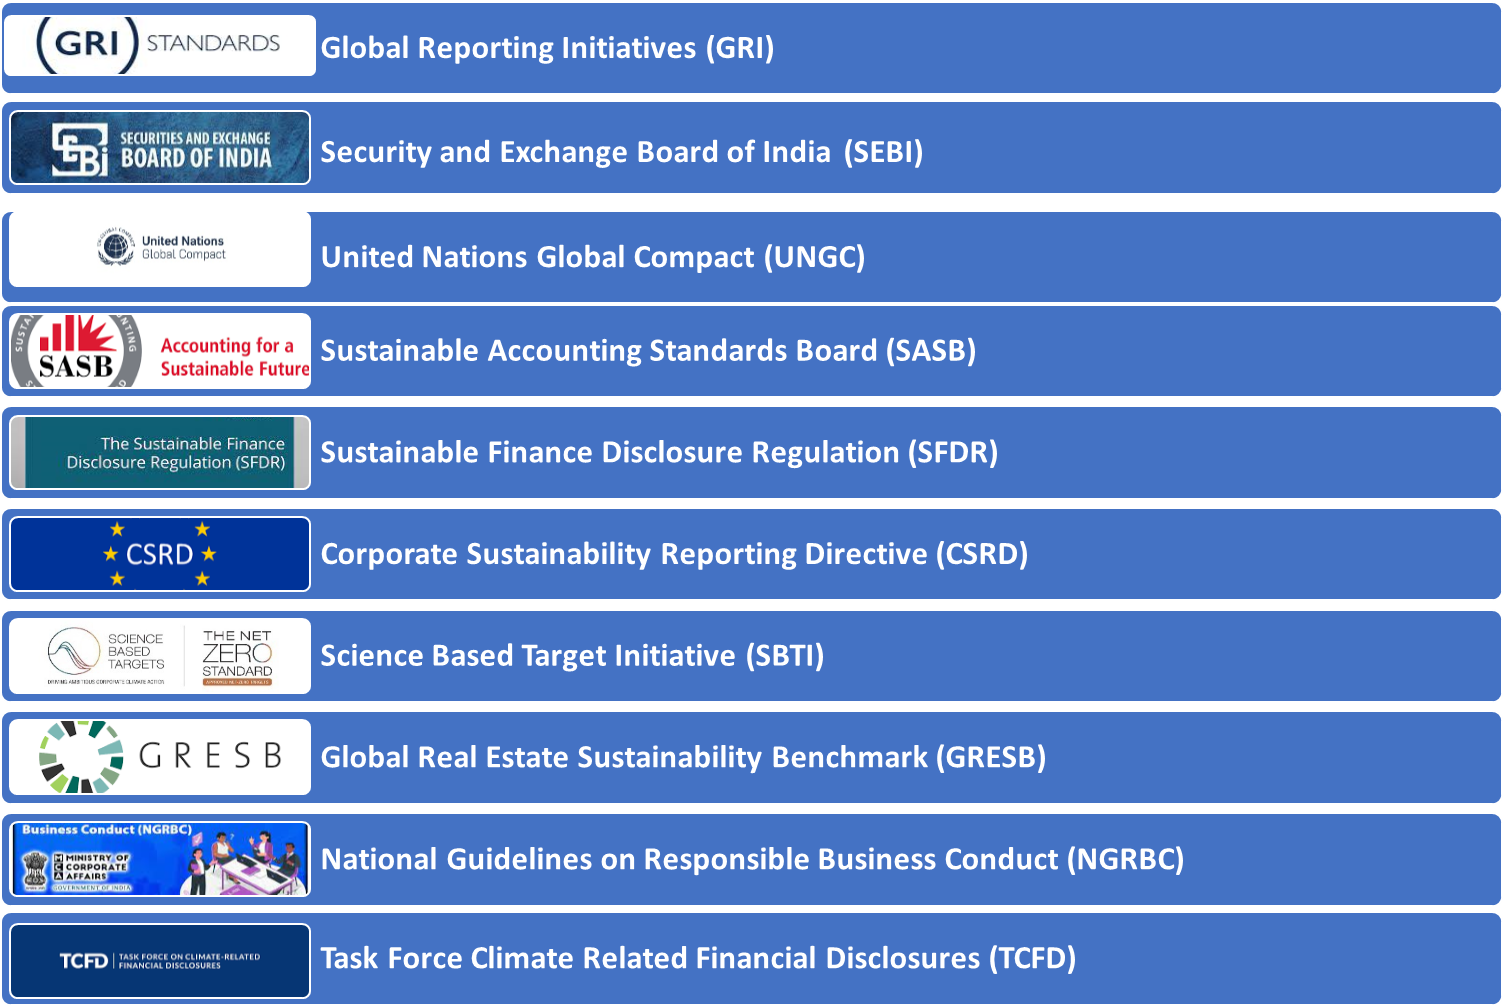 Frameworks followed in ESG